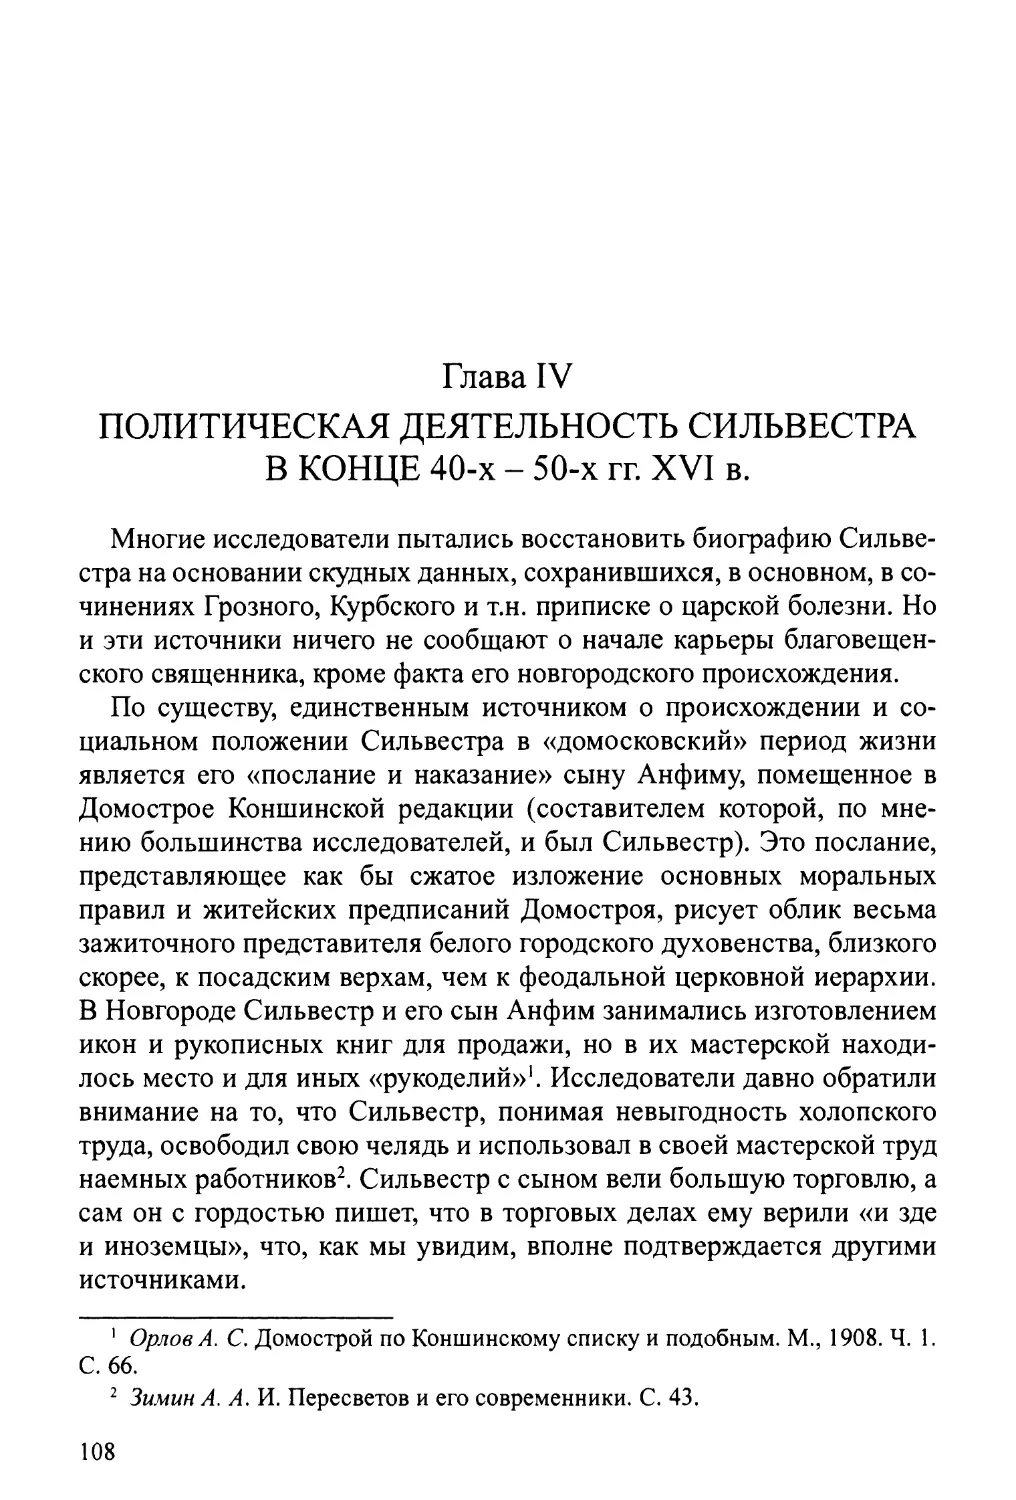 Глава IV. Политическая деятельность Сильвестра в конце 40-50-х гг. XVI в.